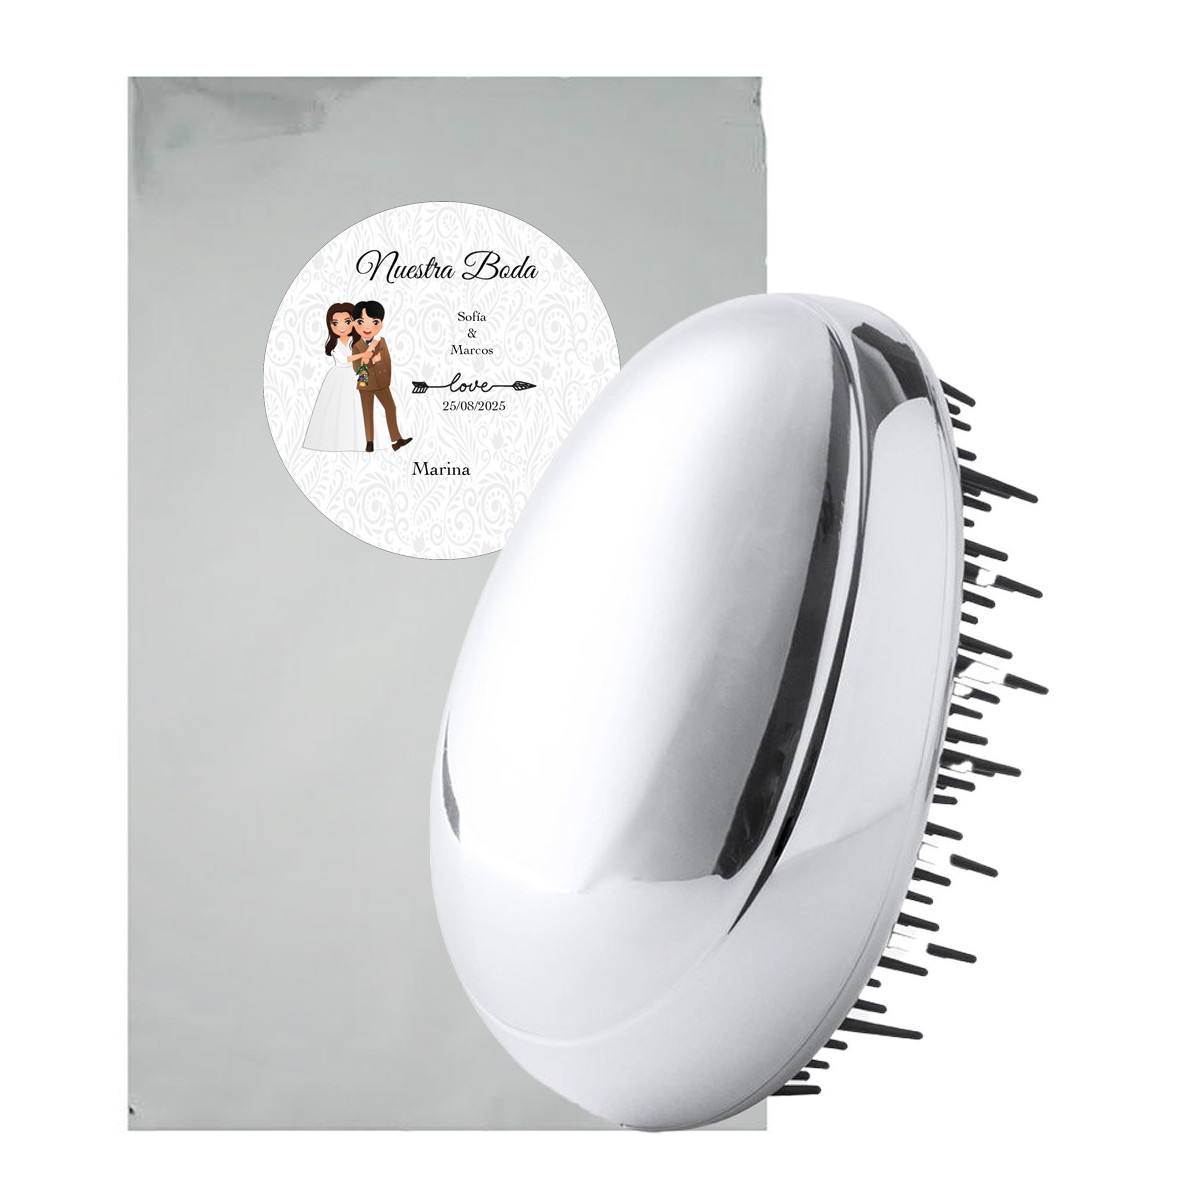 Cepillo de pelo con carcasa en plata presentado en bolsa metálica con adhesivos personalizado para bodas